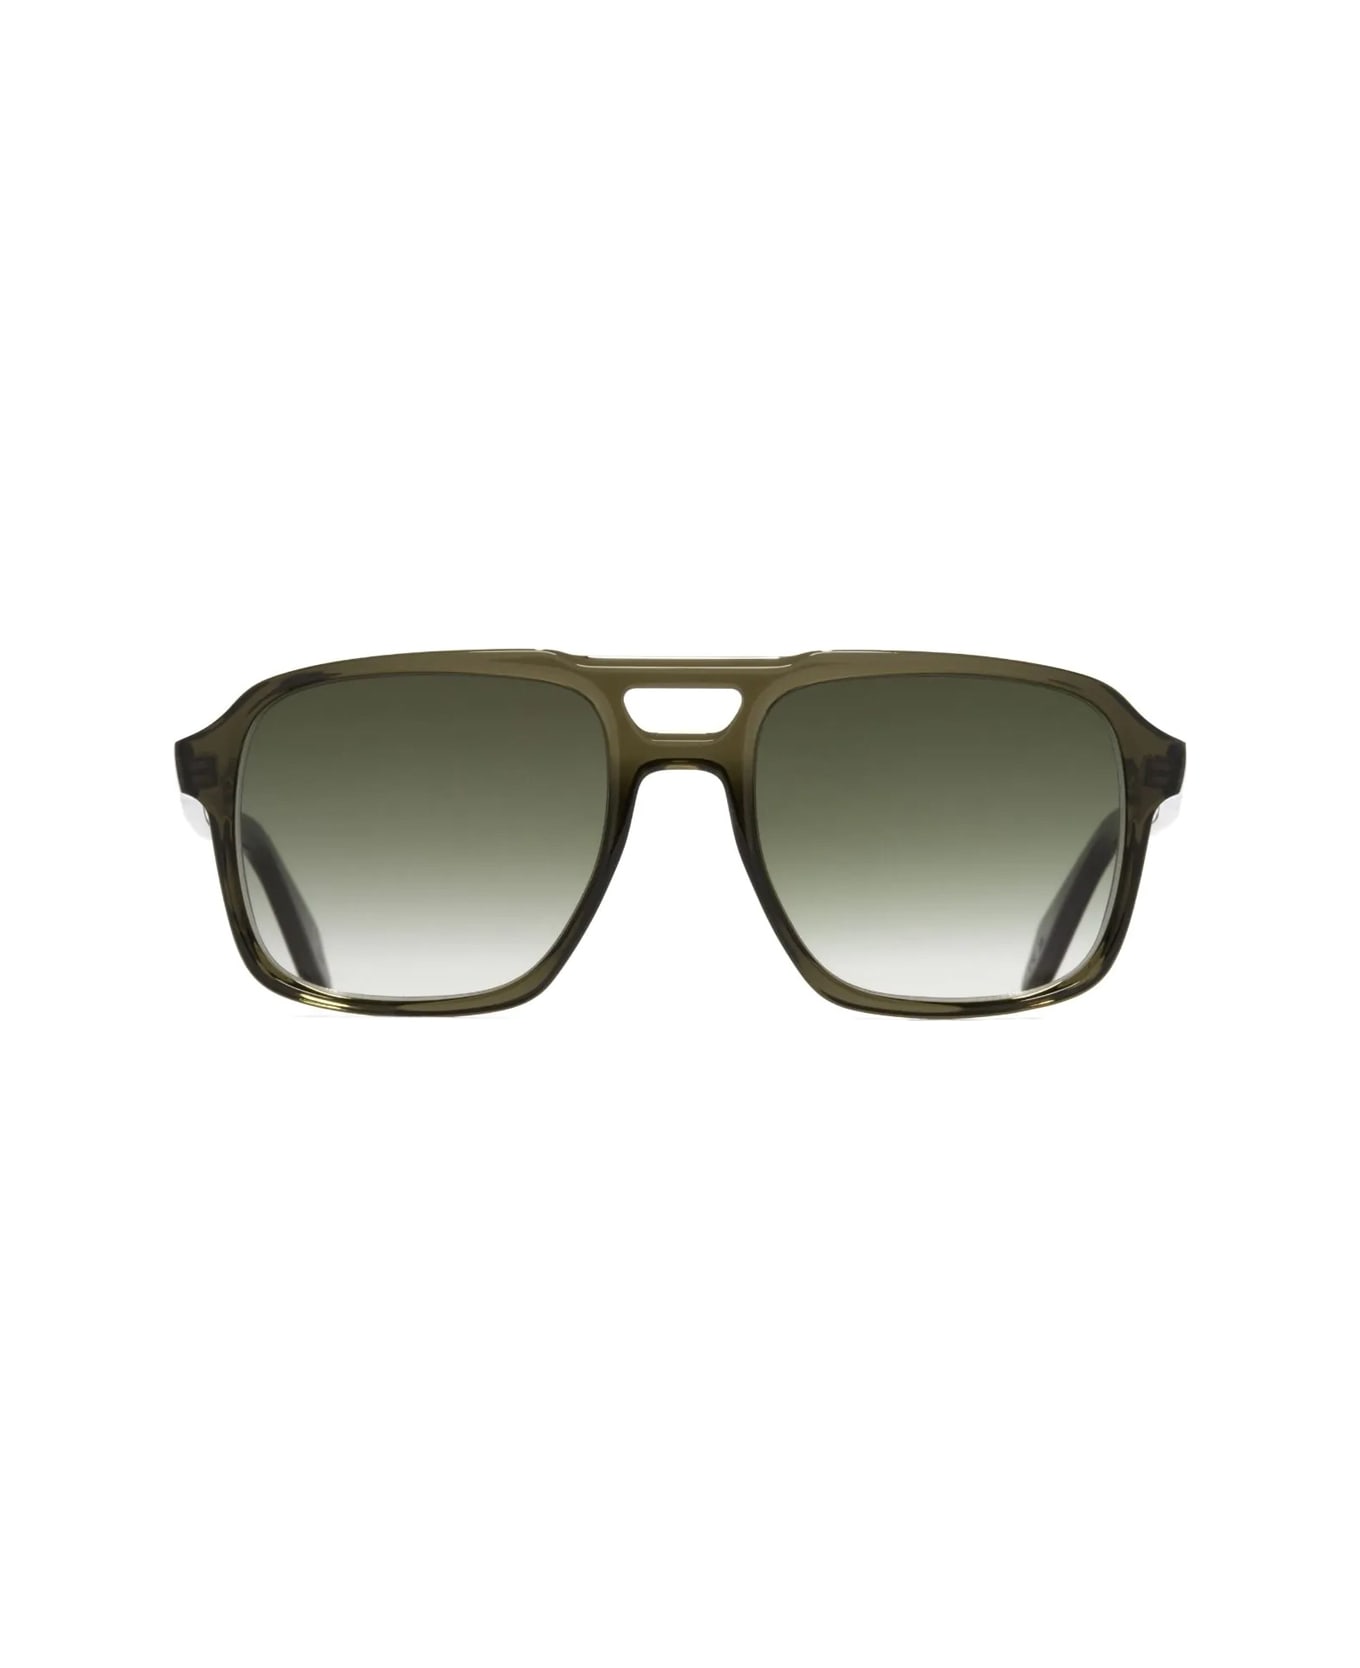 Cutler and Gross 1394 09 Sunglasses - Verde